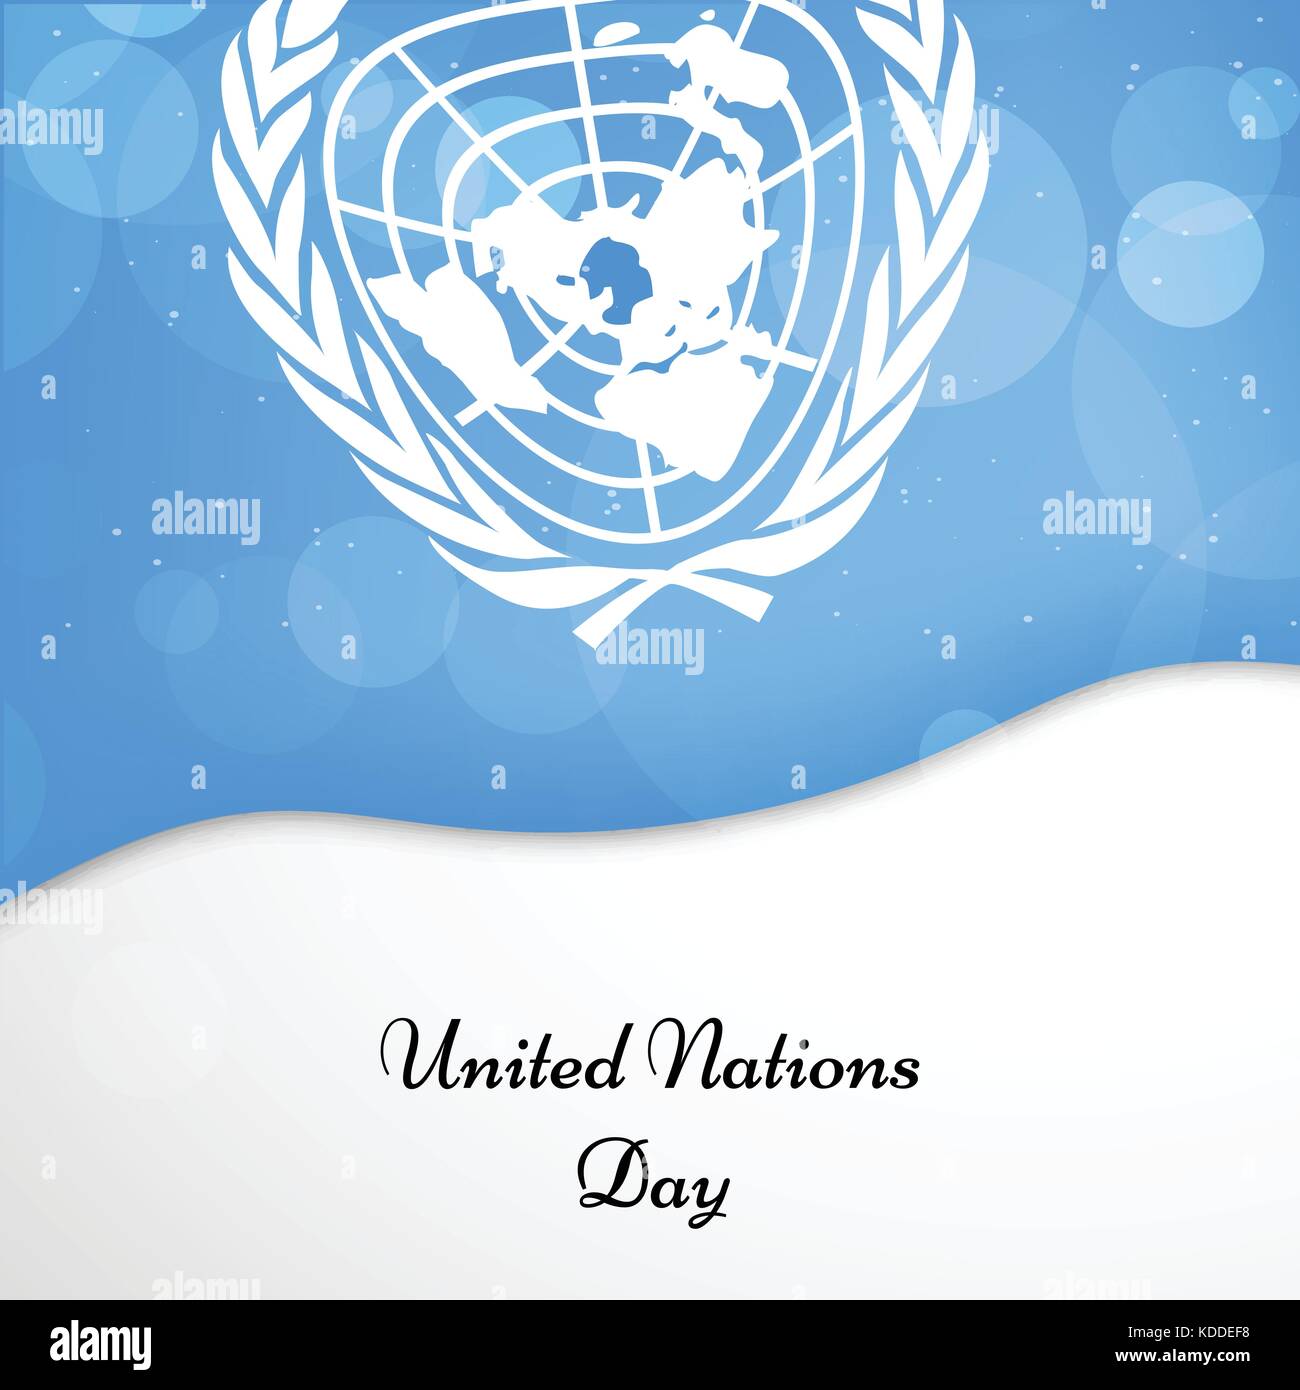 Hình nền ngày Liên Hợp Quốc: Tham gia và thưởng thức bộ sưu tập hình nền ngày Liên Hợp Quốc để biết thêm về lịch sử và ý nghĩa của ngày này. Hình nền rực rỡ và tràn đầy sức sống sẽ mang lại cho bạn cảm giác vui tươi và hồi hộp trước ngày lễ trọng đại này.